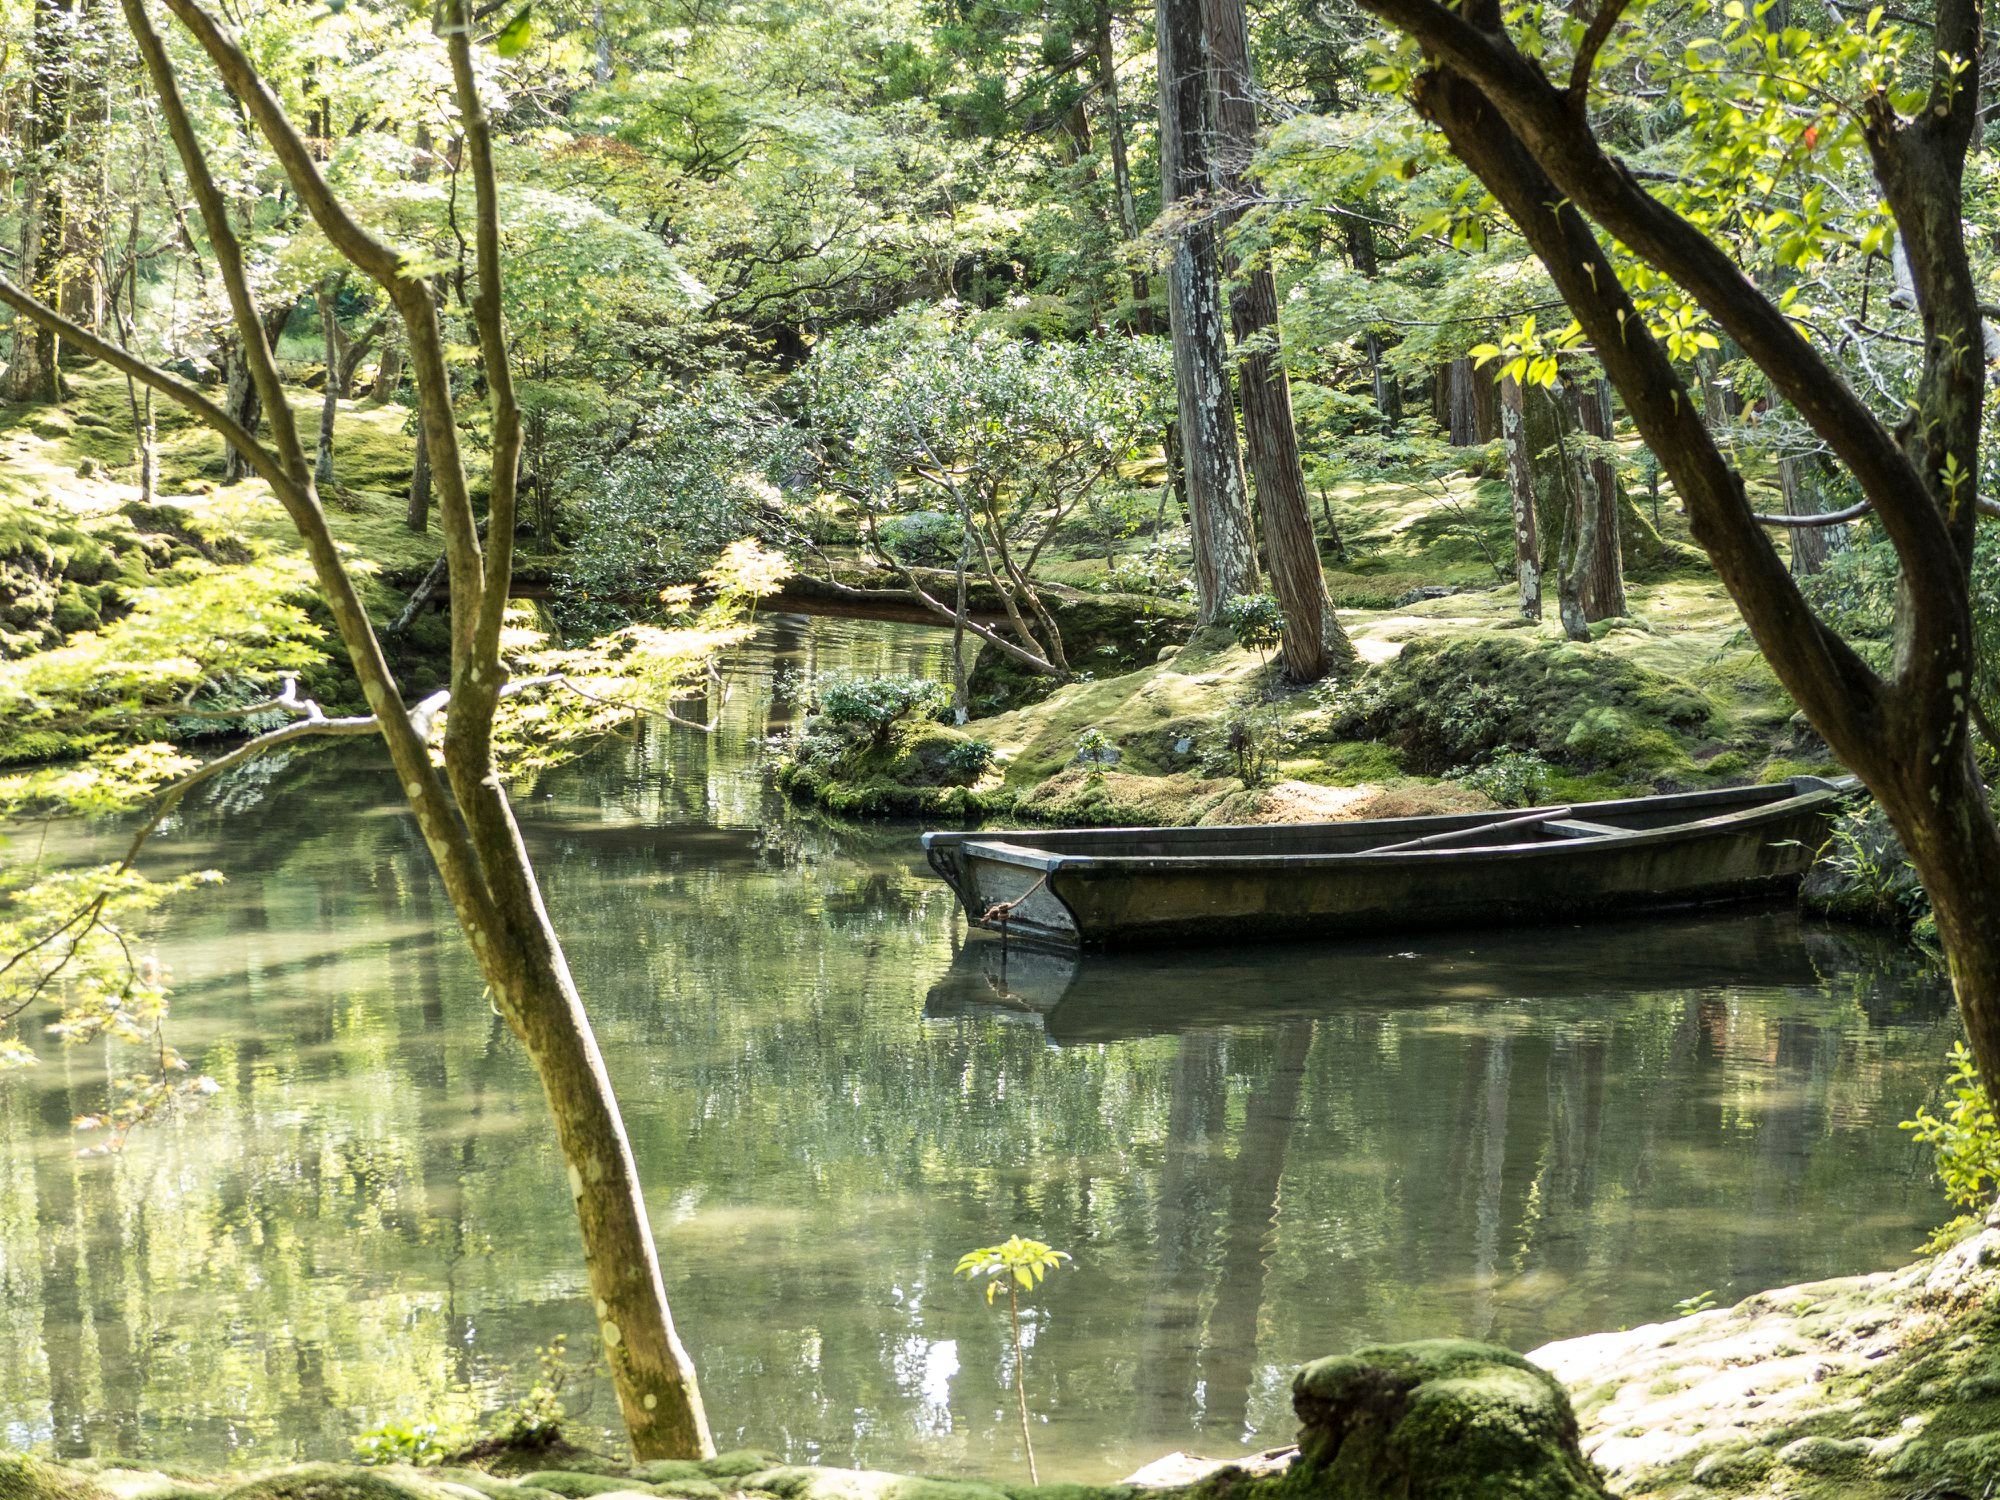 Saiho-ji garden